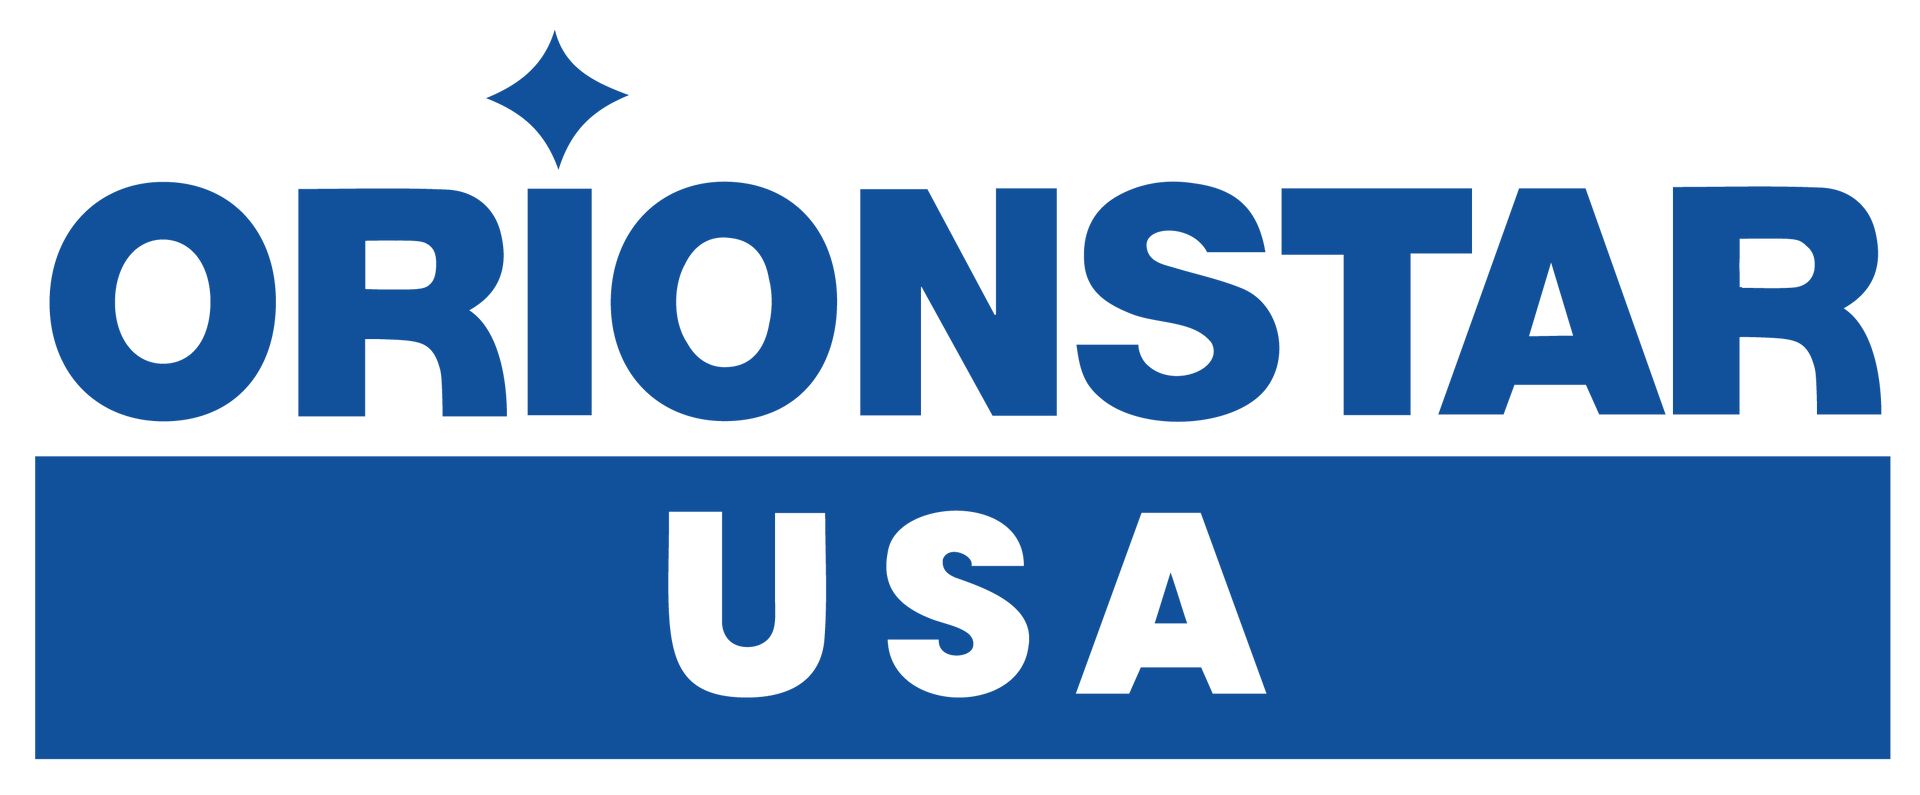 OrionStar USA Header Logo